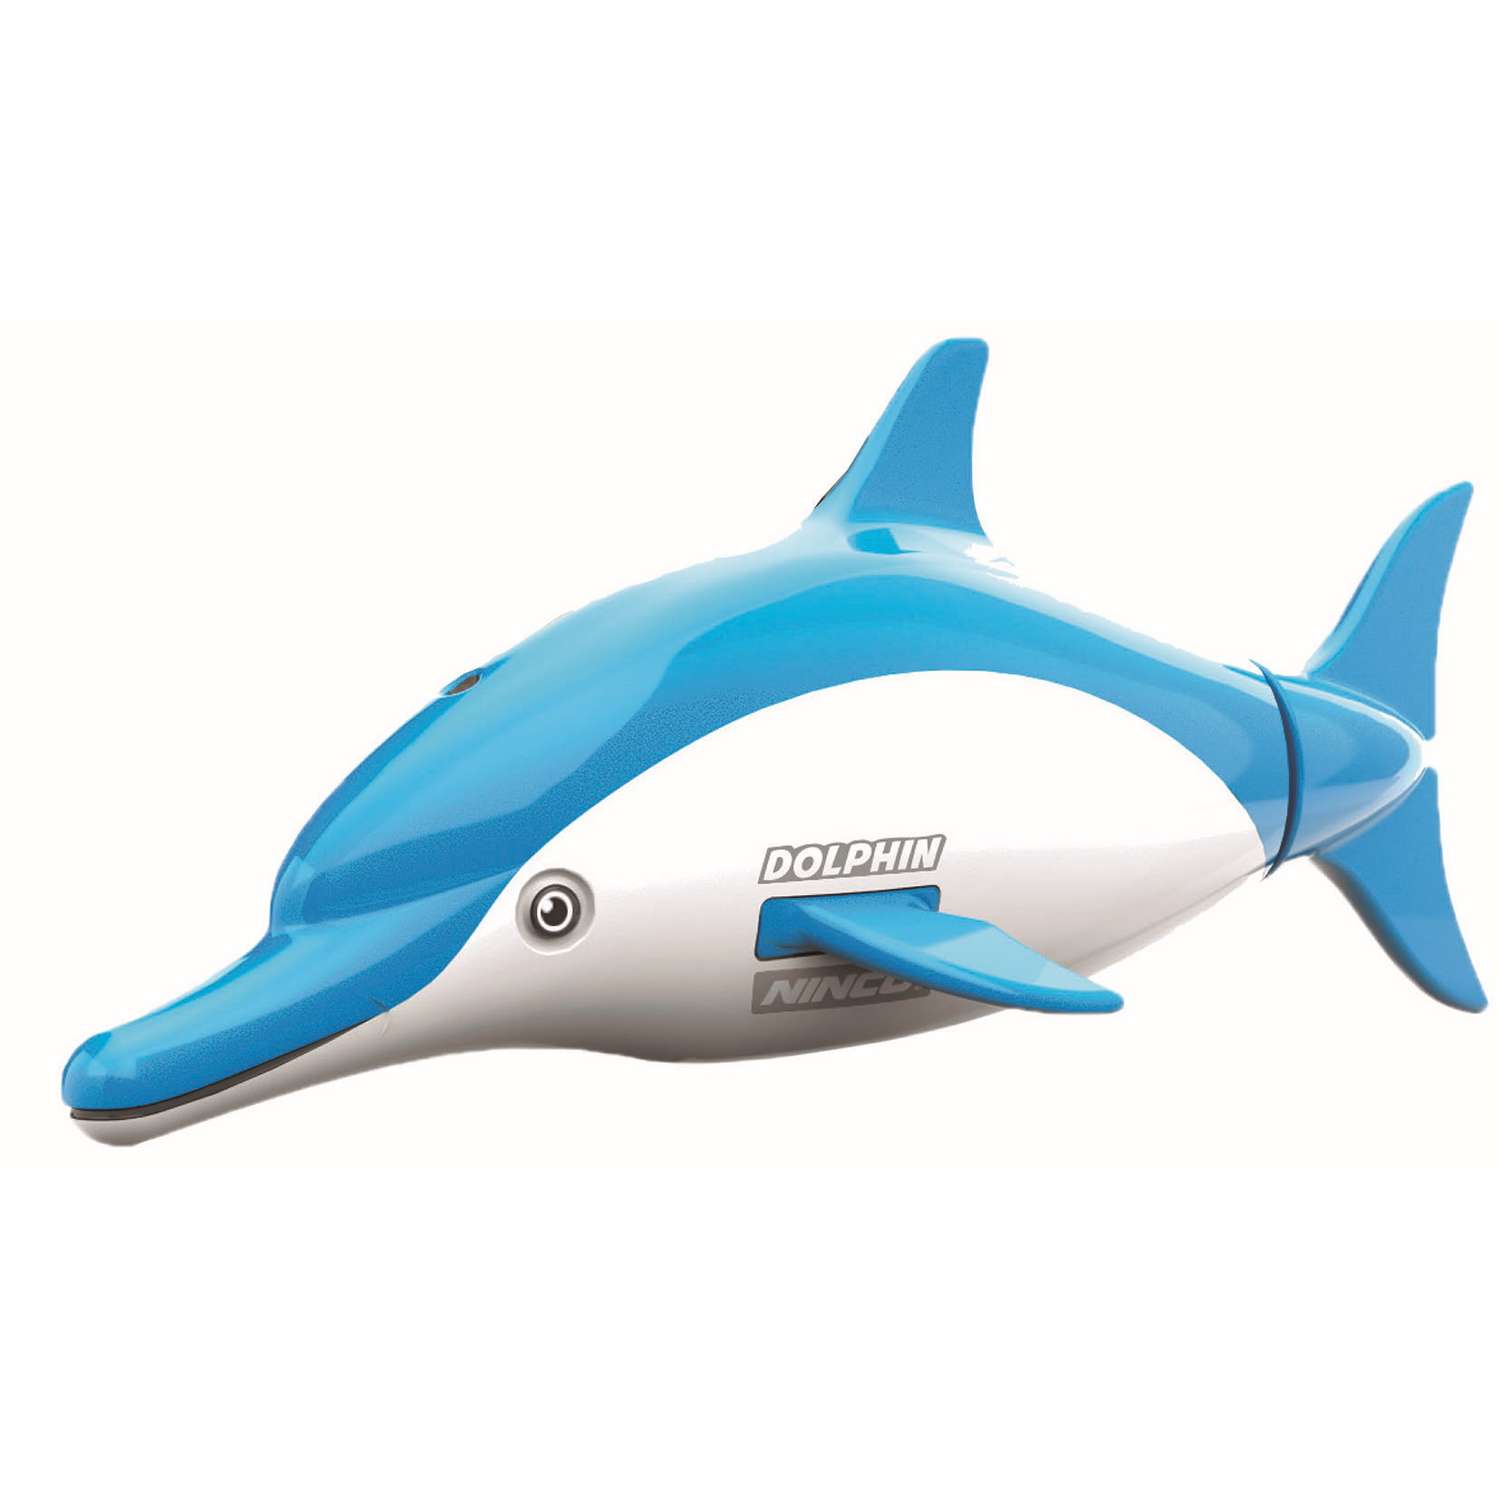 Дельфин на радиоуправлении Ninco Dolphin - фото 1